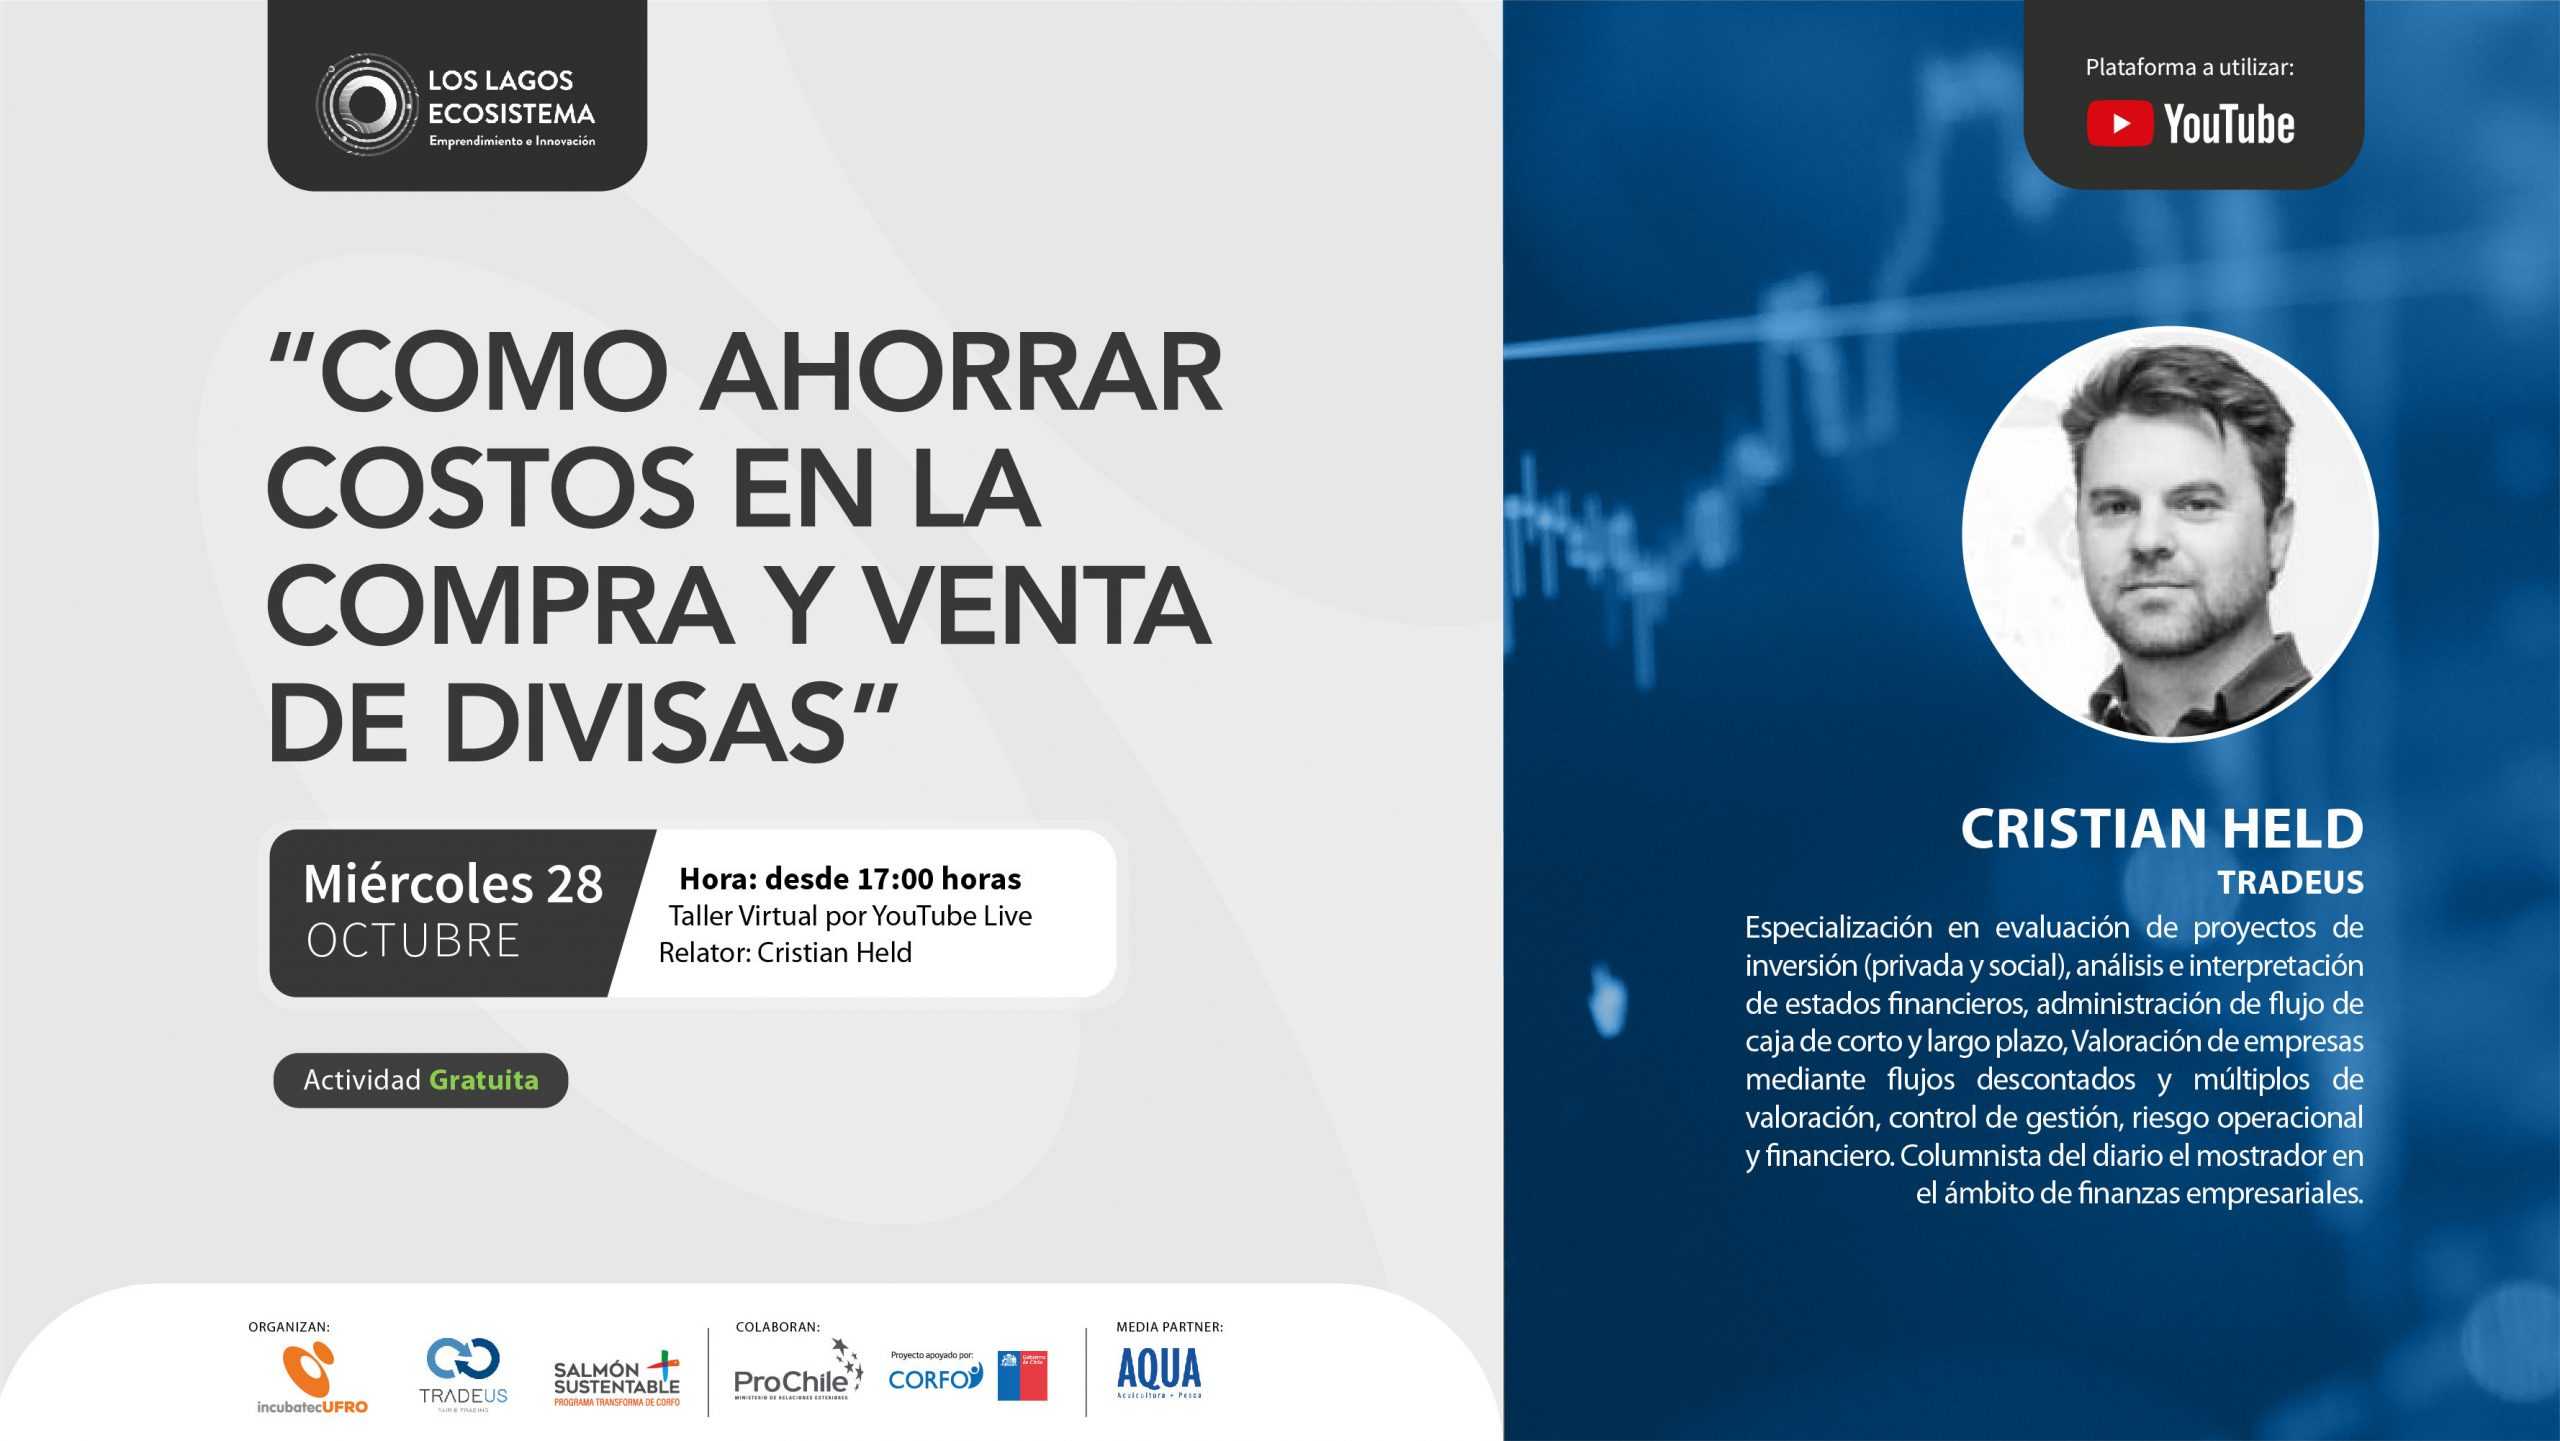 Ciclo de charlas “Fintech”: Entregarán recomendaciones para ahorrar costos en compra y venta de divisas